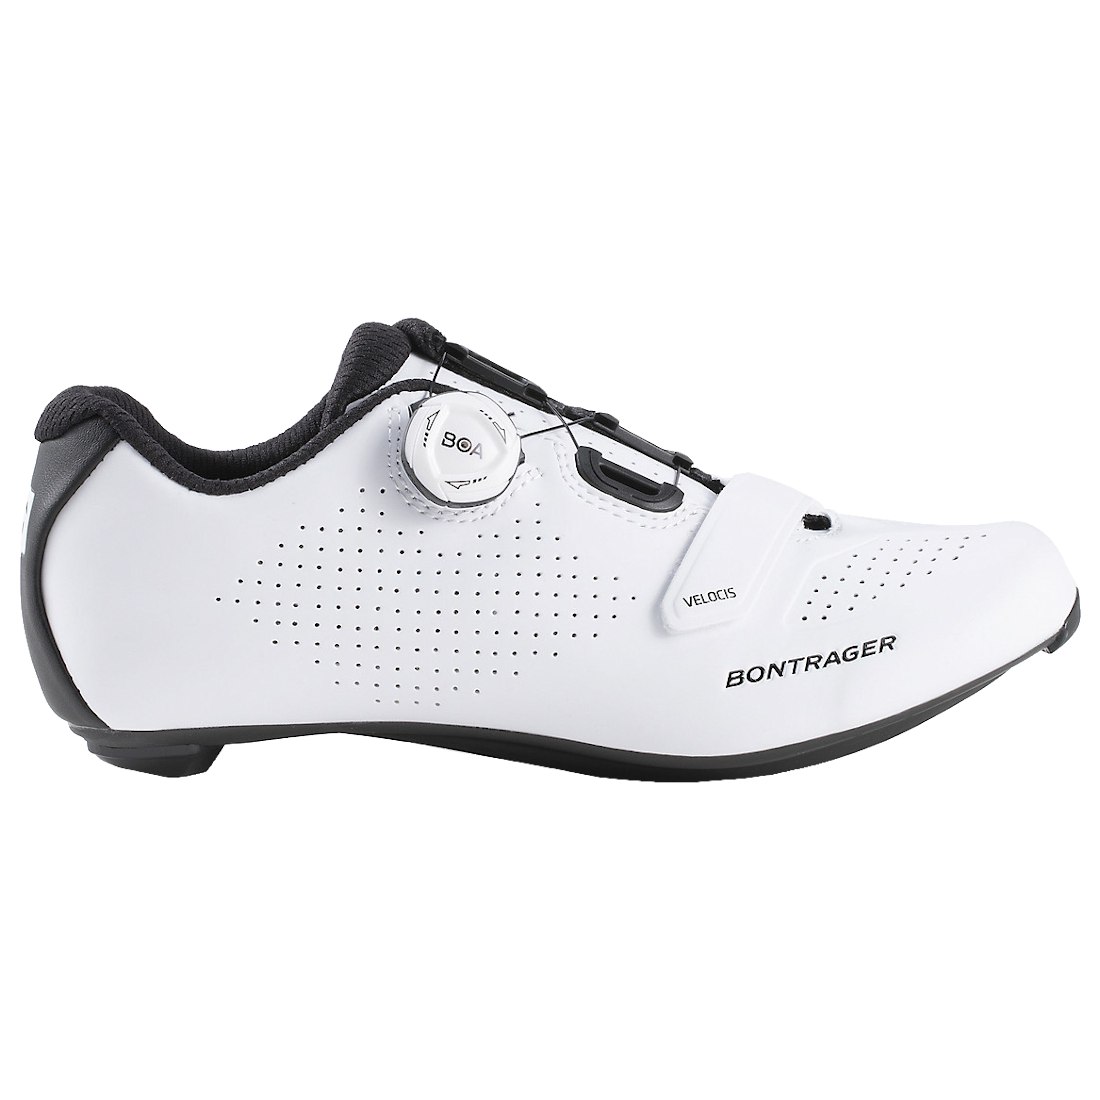 Produktbild von Bontrager Velocis Road Shoe Rennradschuh - white